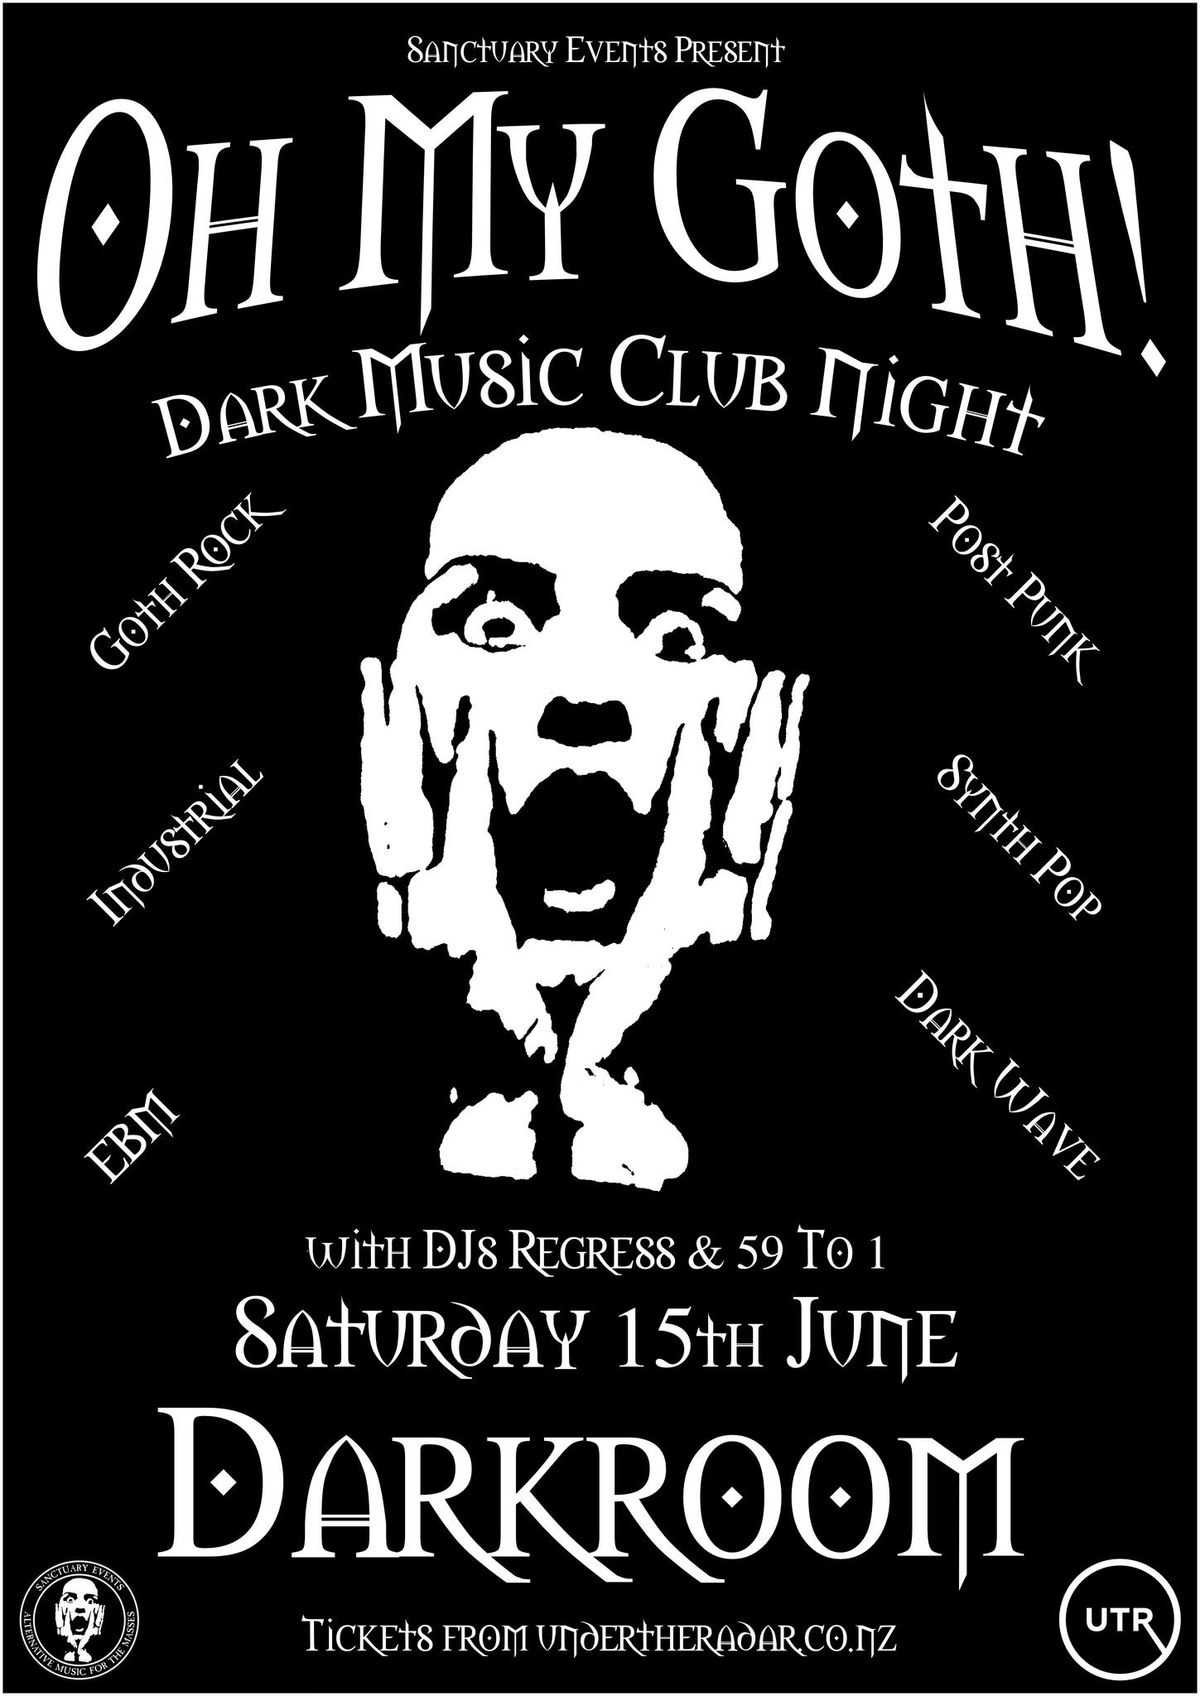 Oh My Goth! Dark Music Club Night